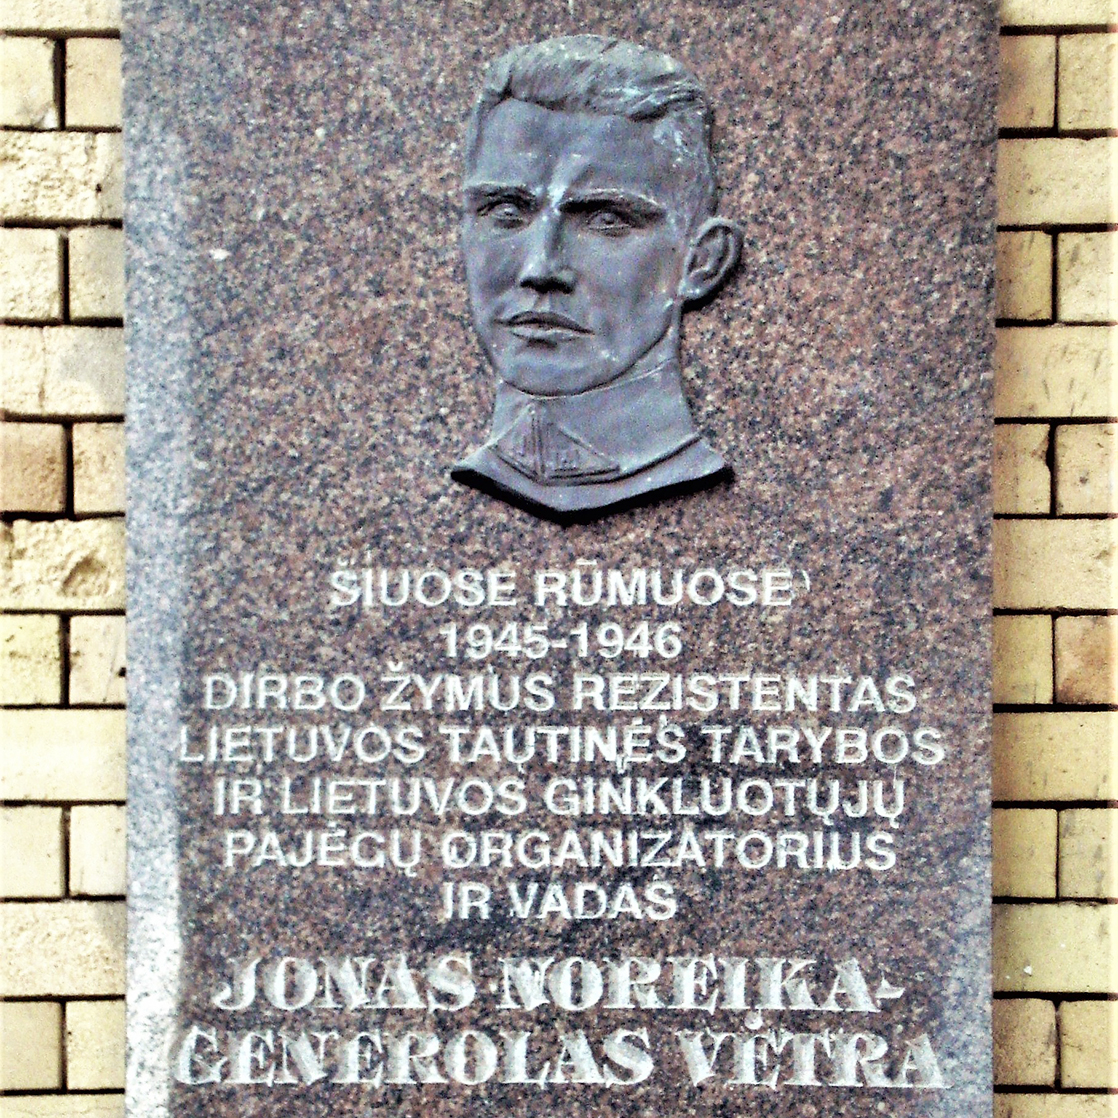 Йонас Норейка